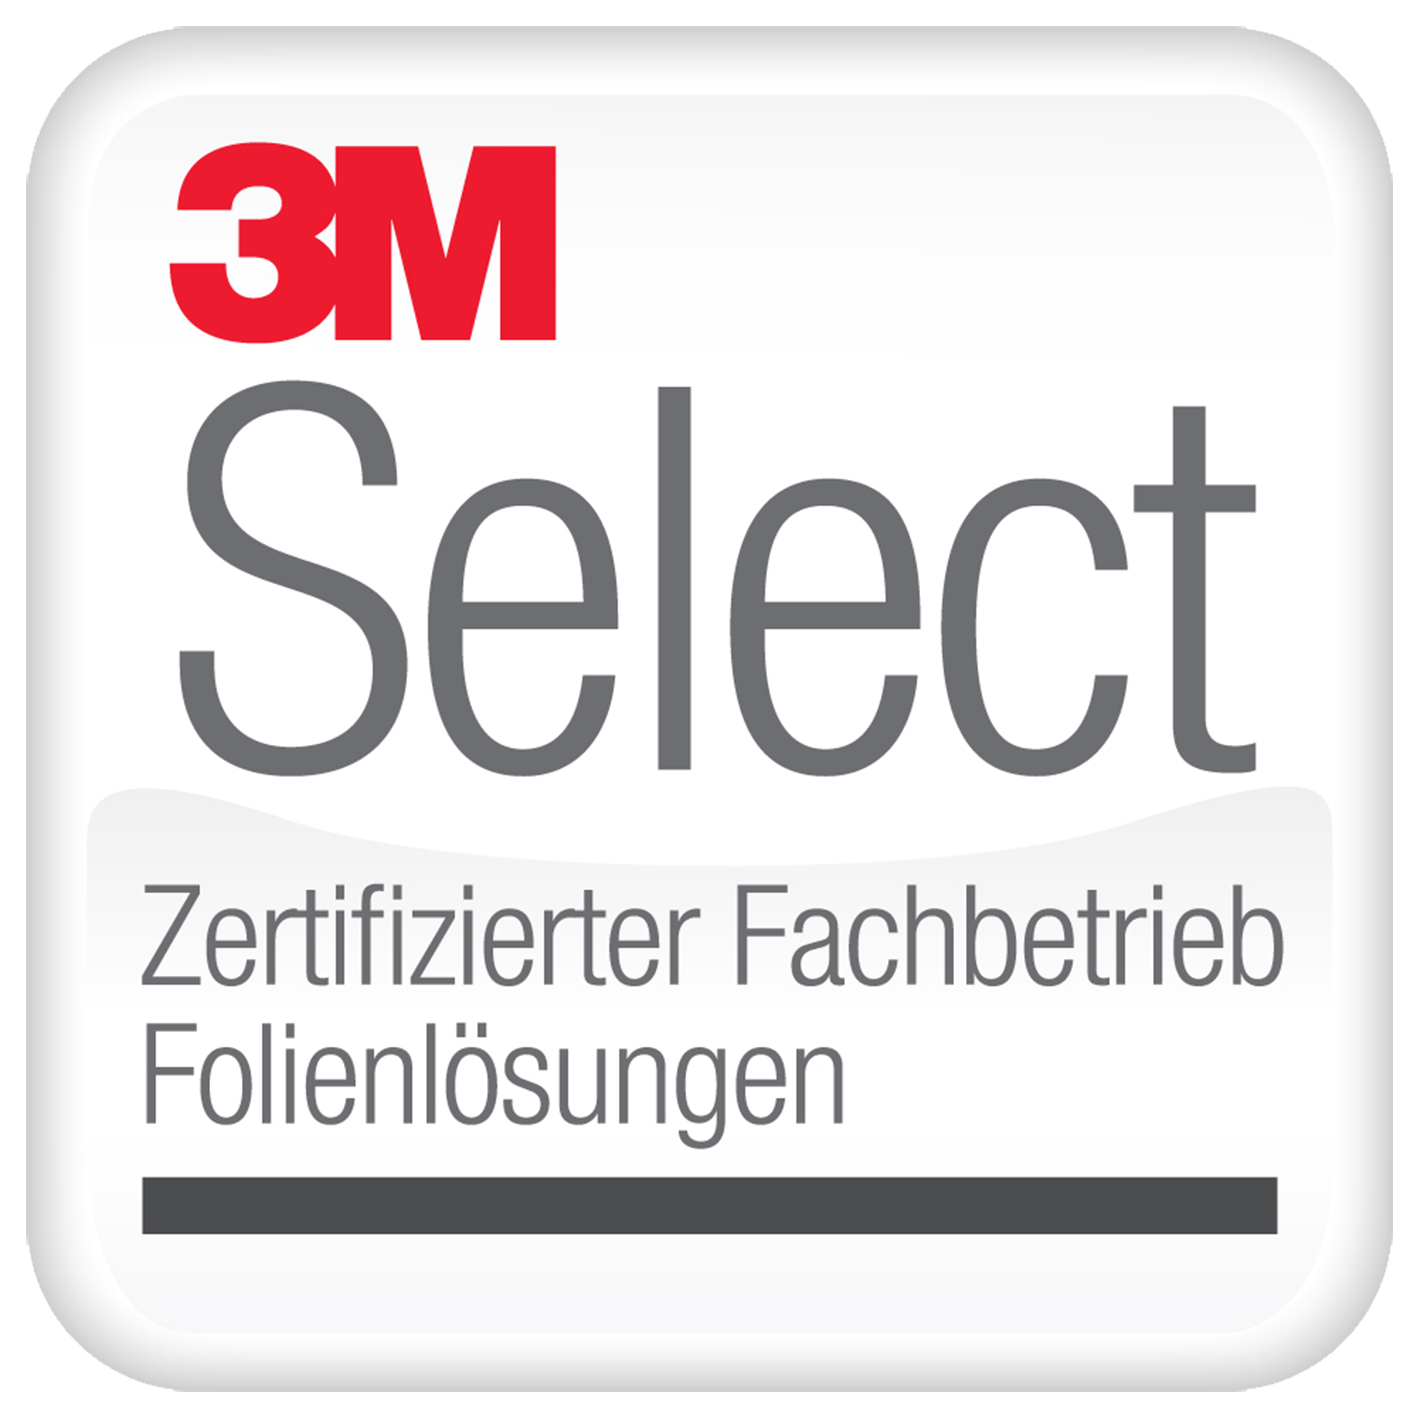 3M Select Logo für zertifizierte Fachbetriebe